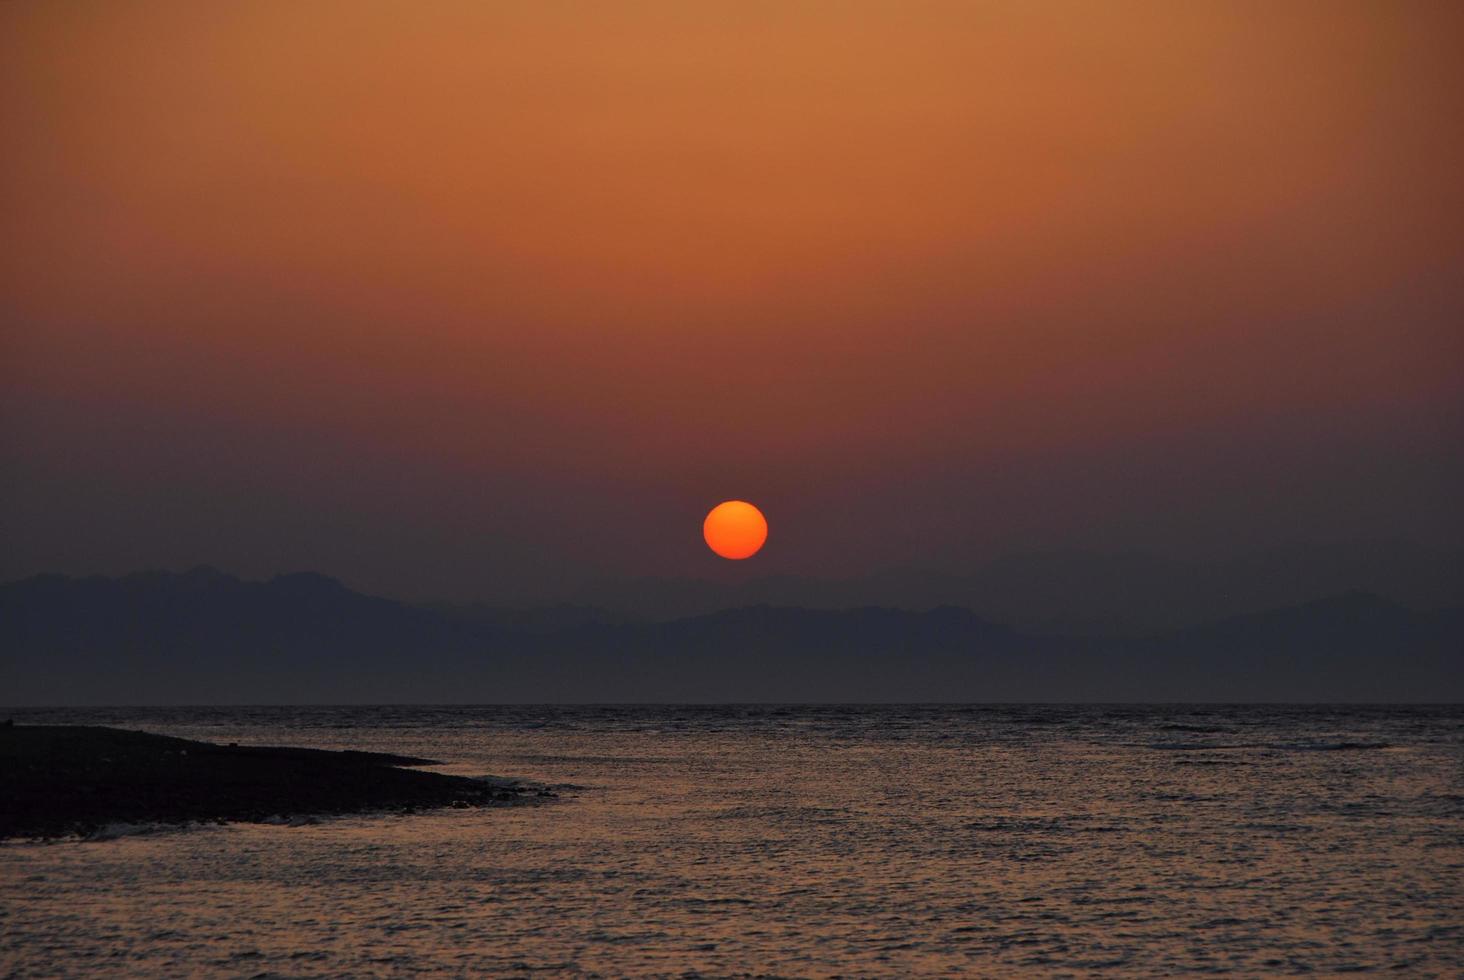 soleil rouge au lever du soleil sur la mer photo